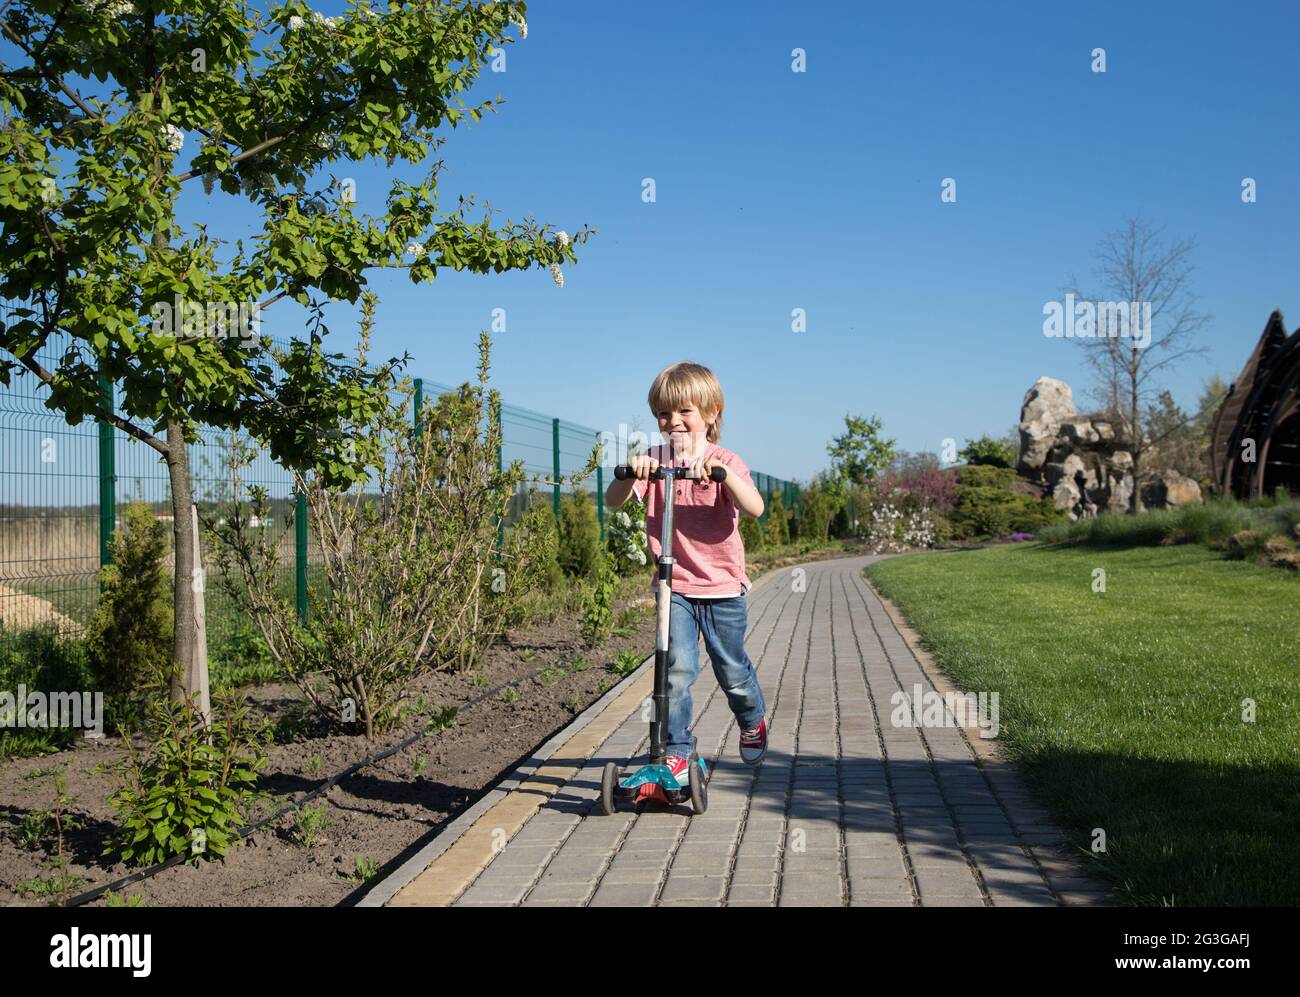 un ragazzo allegro, di 4-5 anni, corre sul marciapiede nel parco su uno scooter. movimento, velocità, attività sportive per bambini Foto Stock